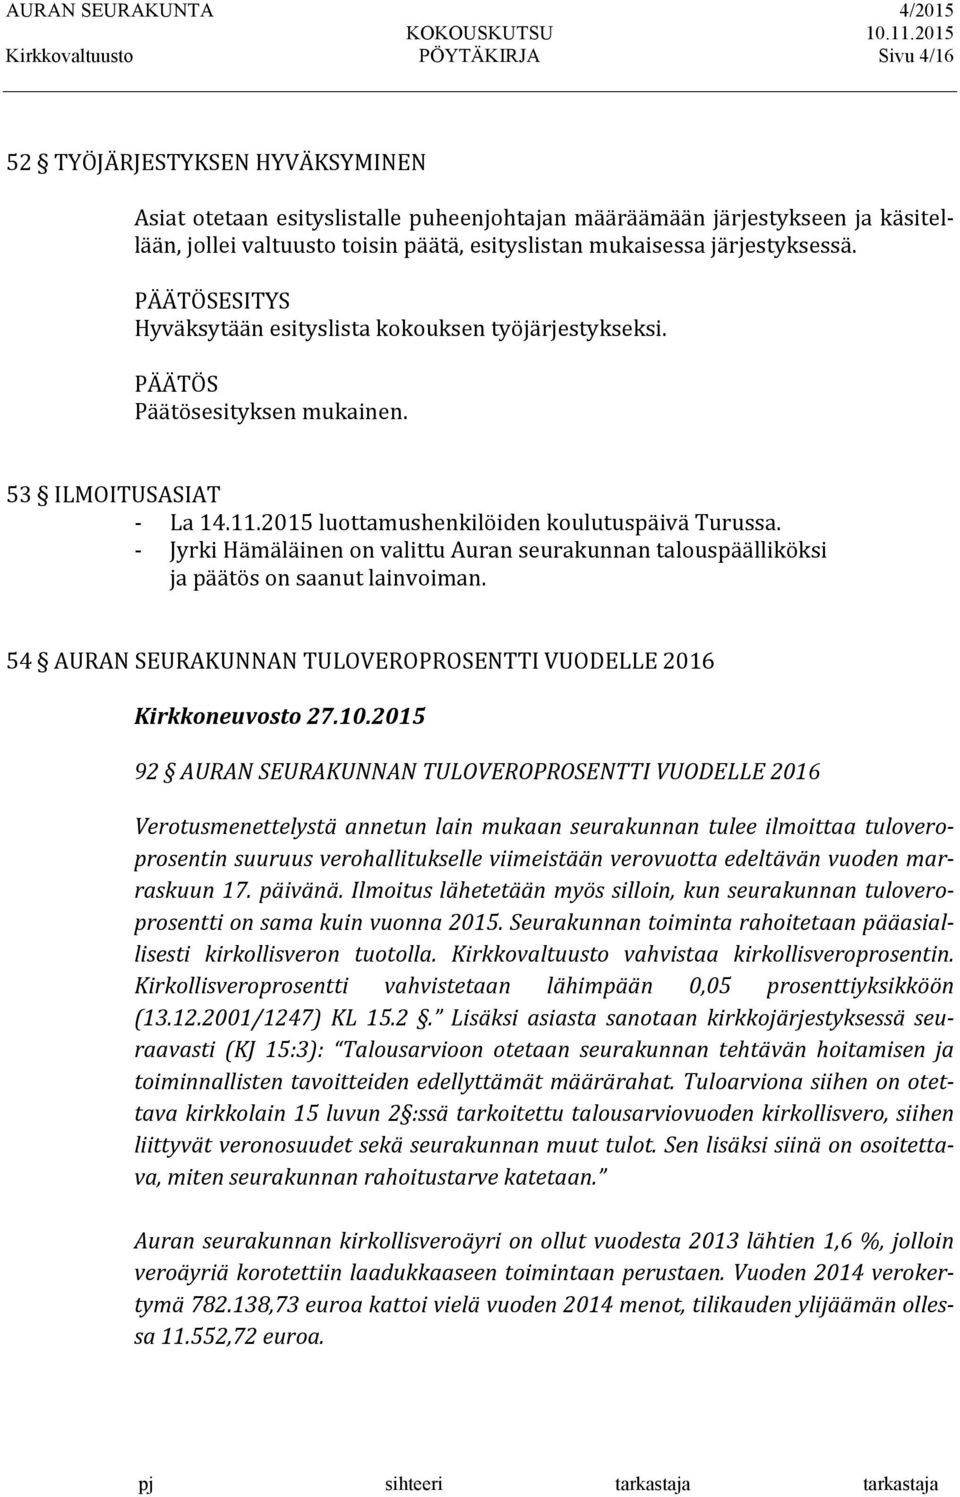 - Jyrki Hämäläinen on valittu Auran seurakunnan talouspäälliköksi ja päätös on saanut lainvoiman. 54 AURAN SEURAKUNNAN TULOVEROPROSENTTI VUODELLE 2016 Kirkkoneuvosto 27.10.